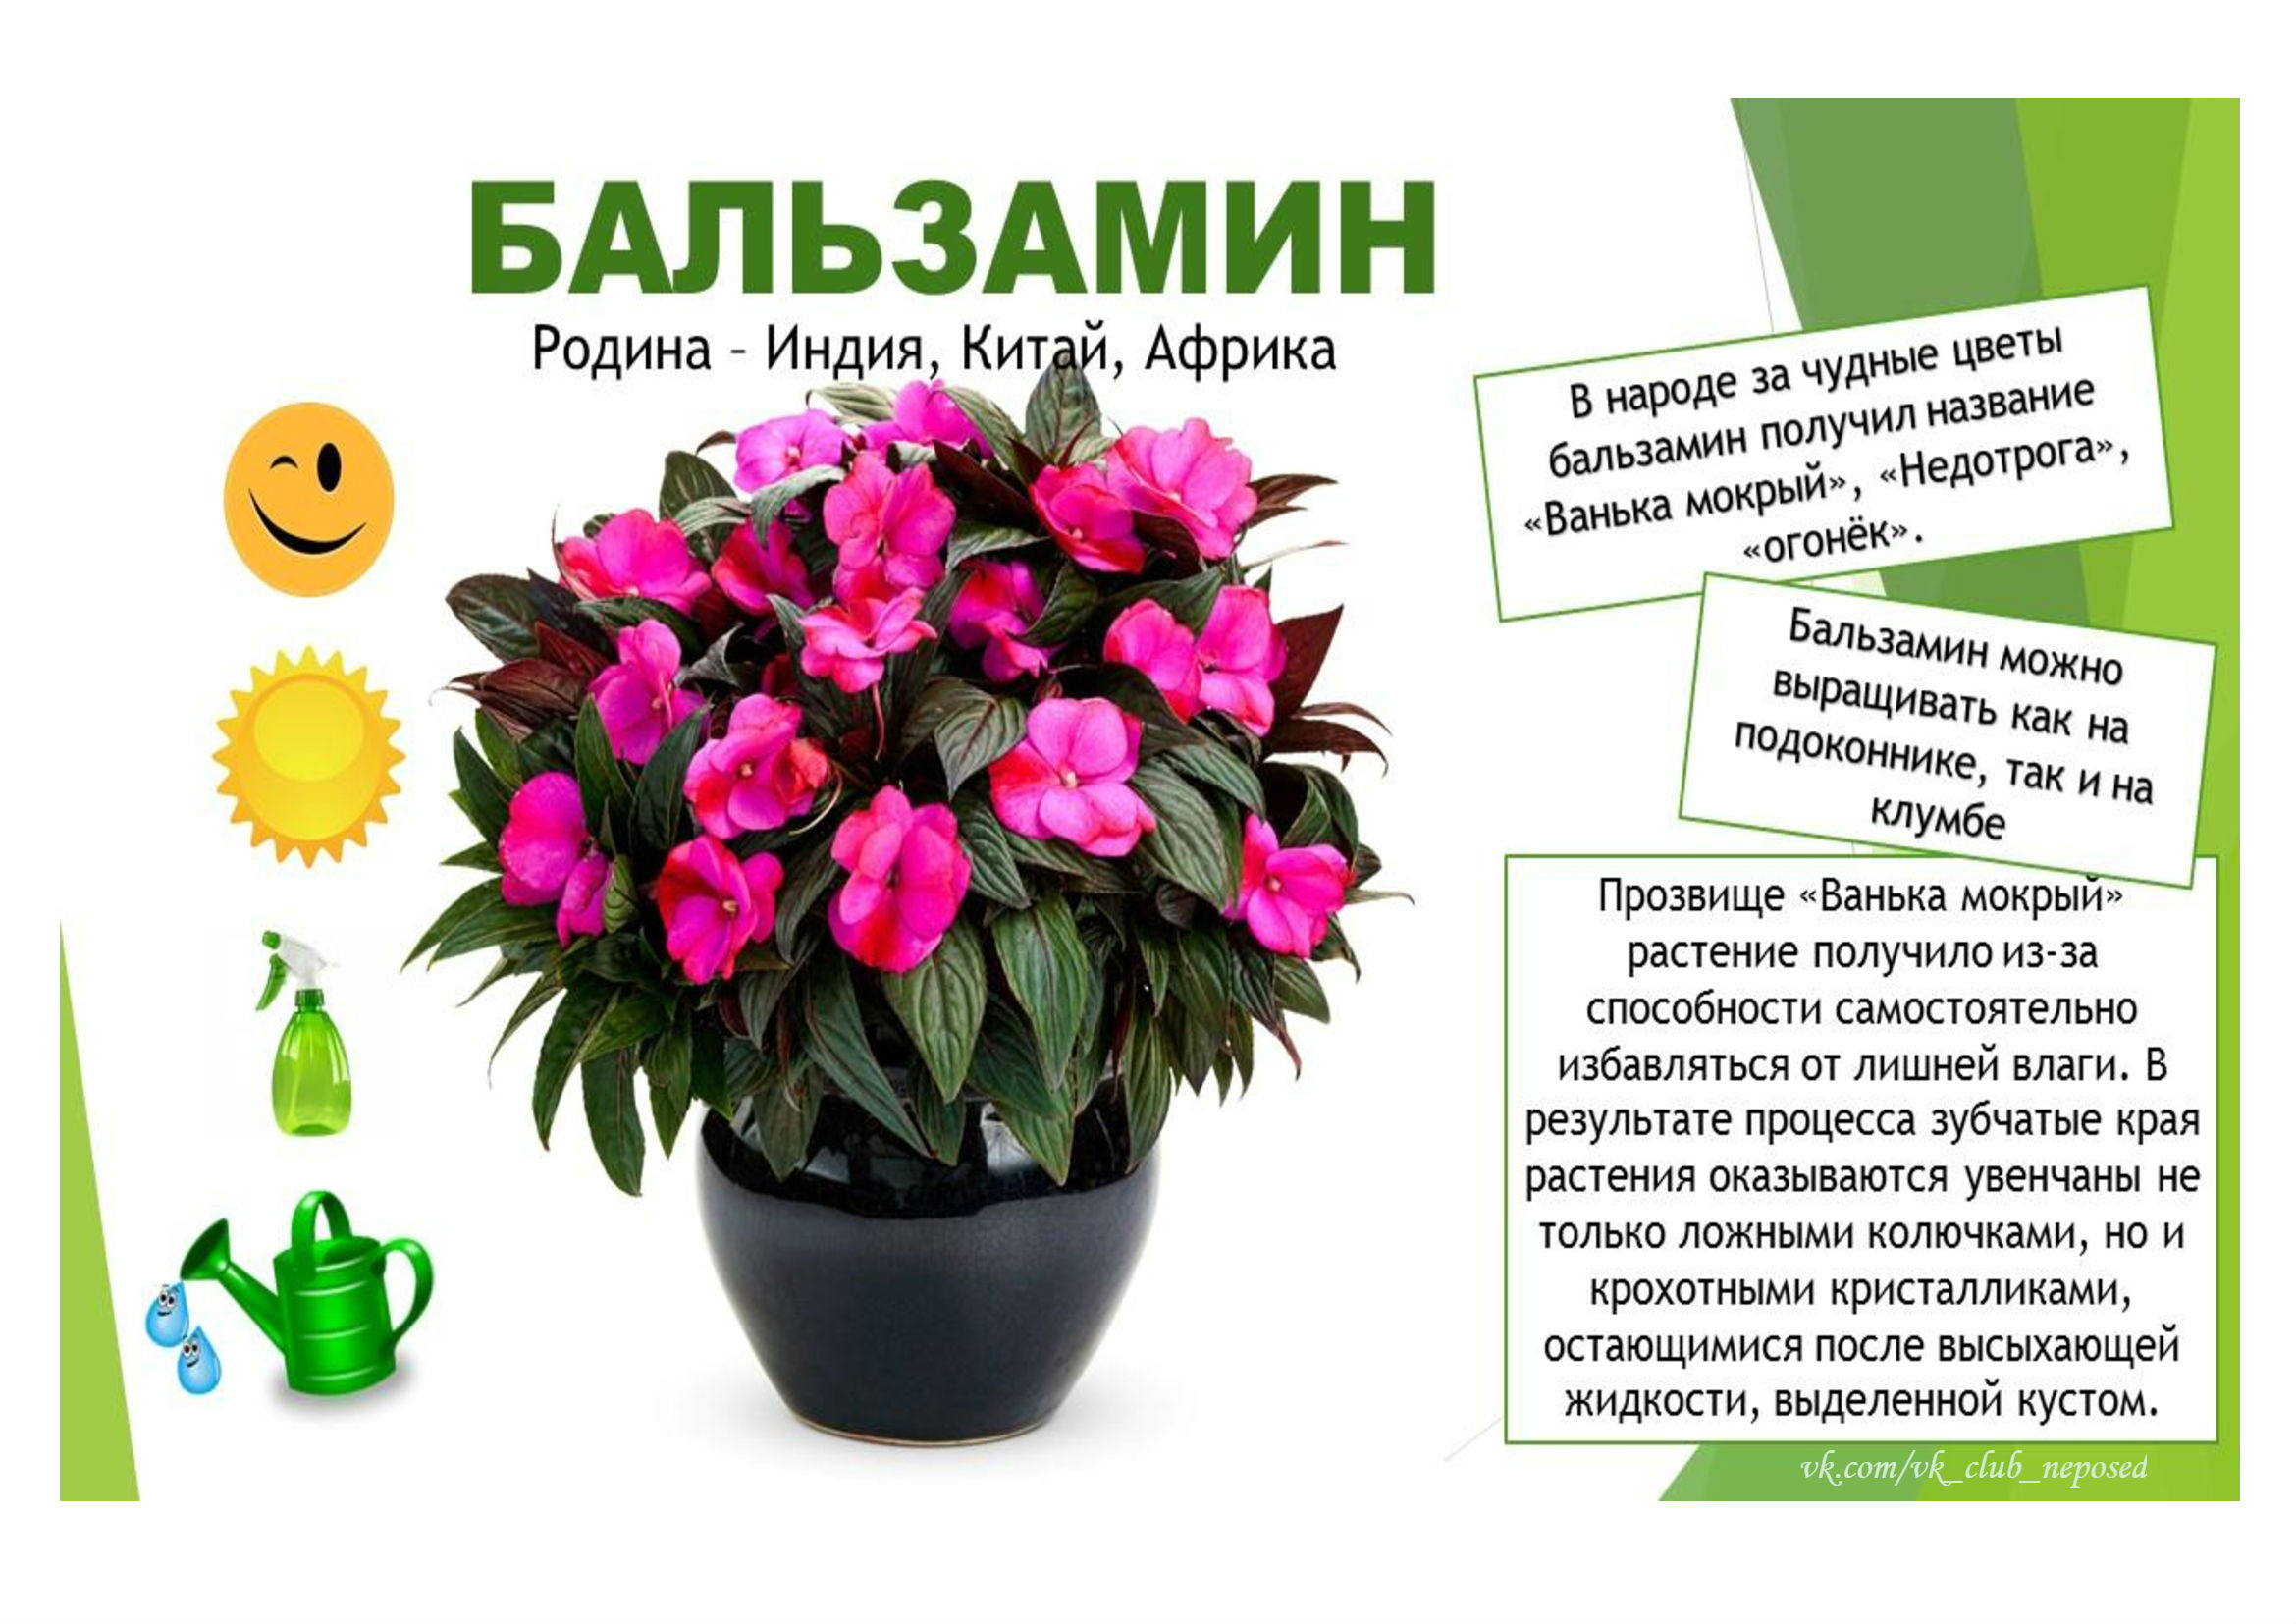 Фото и описание комнатных растений и цветов